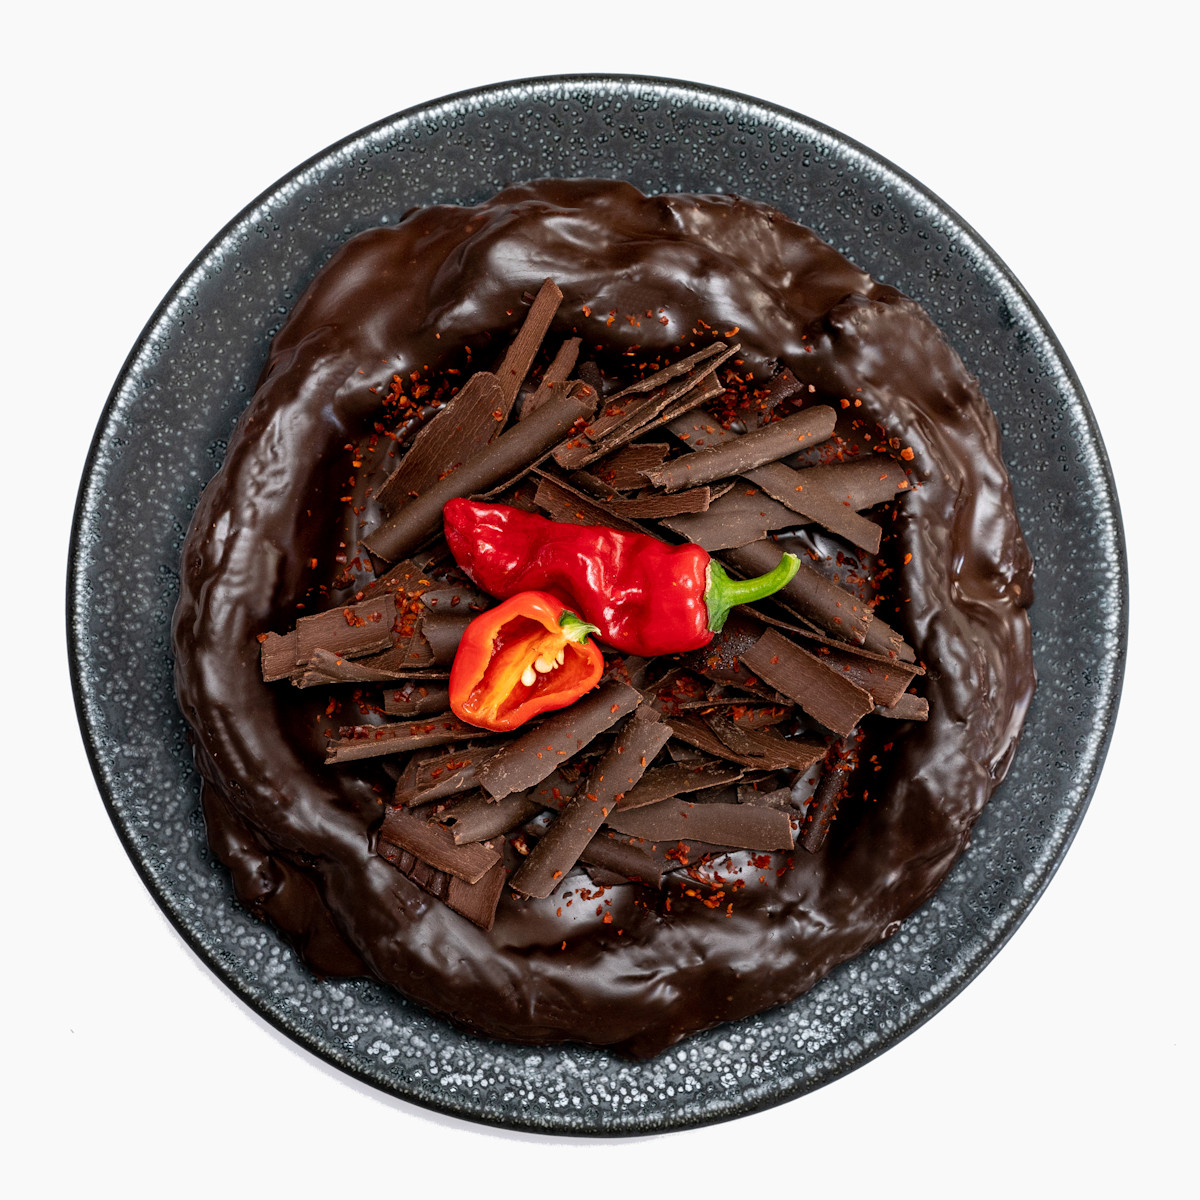 Čokodort Chilli zdobený čokoládovými hoblinami a sušenými chilli vločkami na elegantním talíři